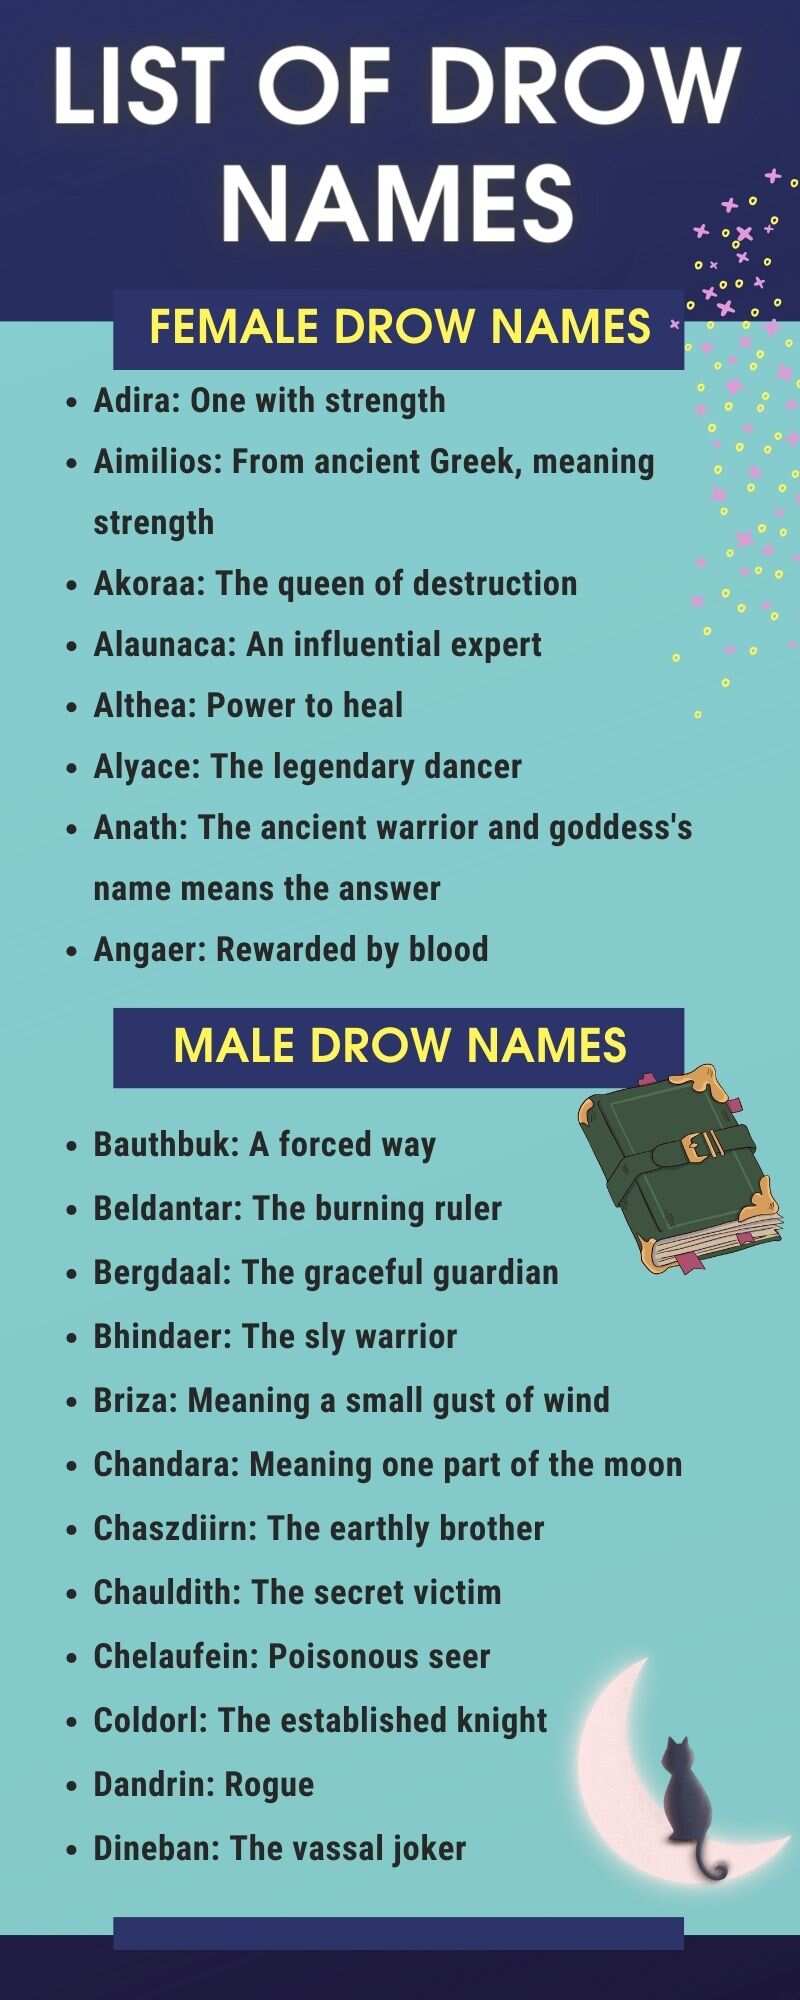 List of drow names